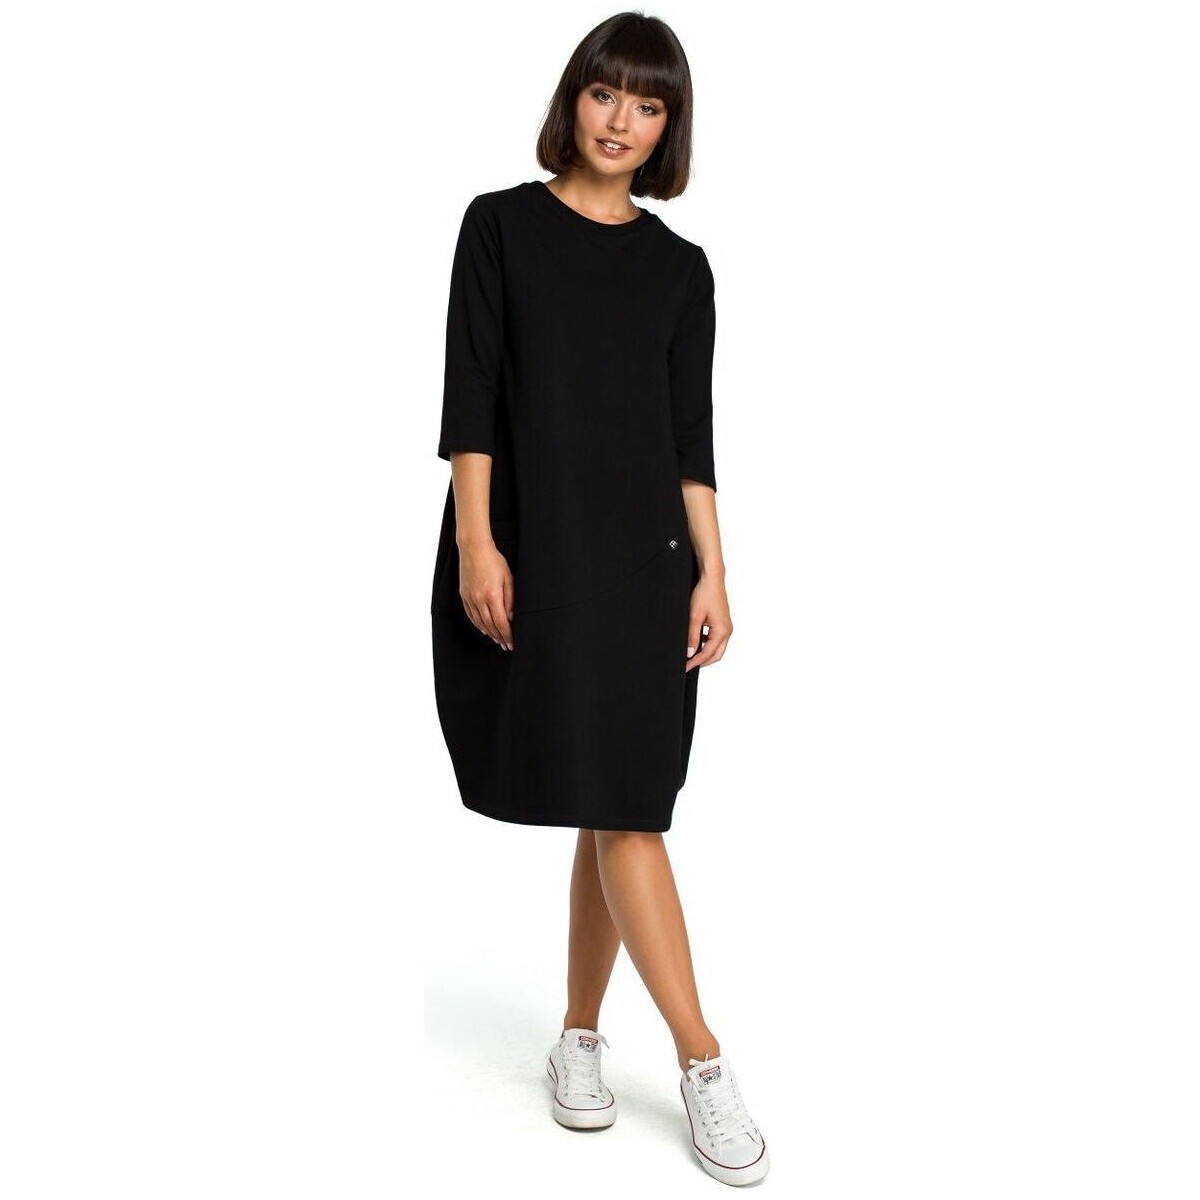 Textil Ženy Krátké šaty Bewear Dámské midi šaty Czesl B083 černá Černá